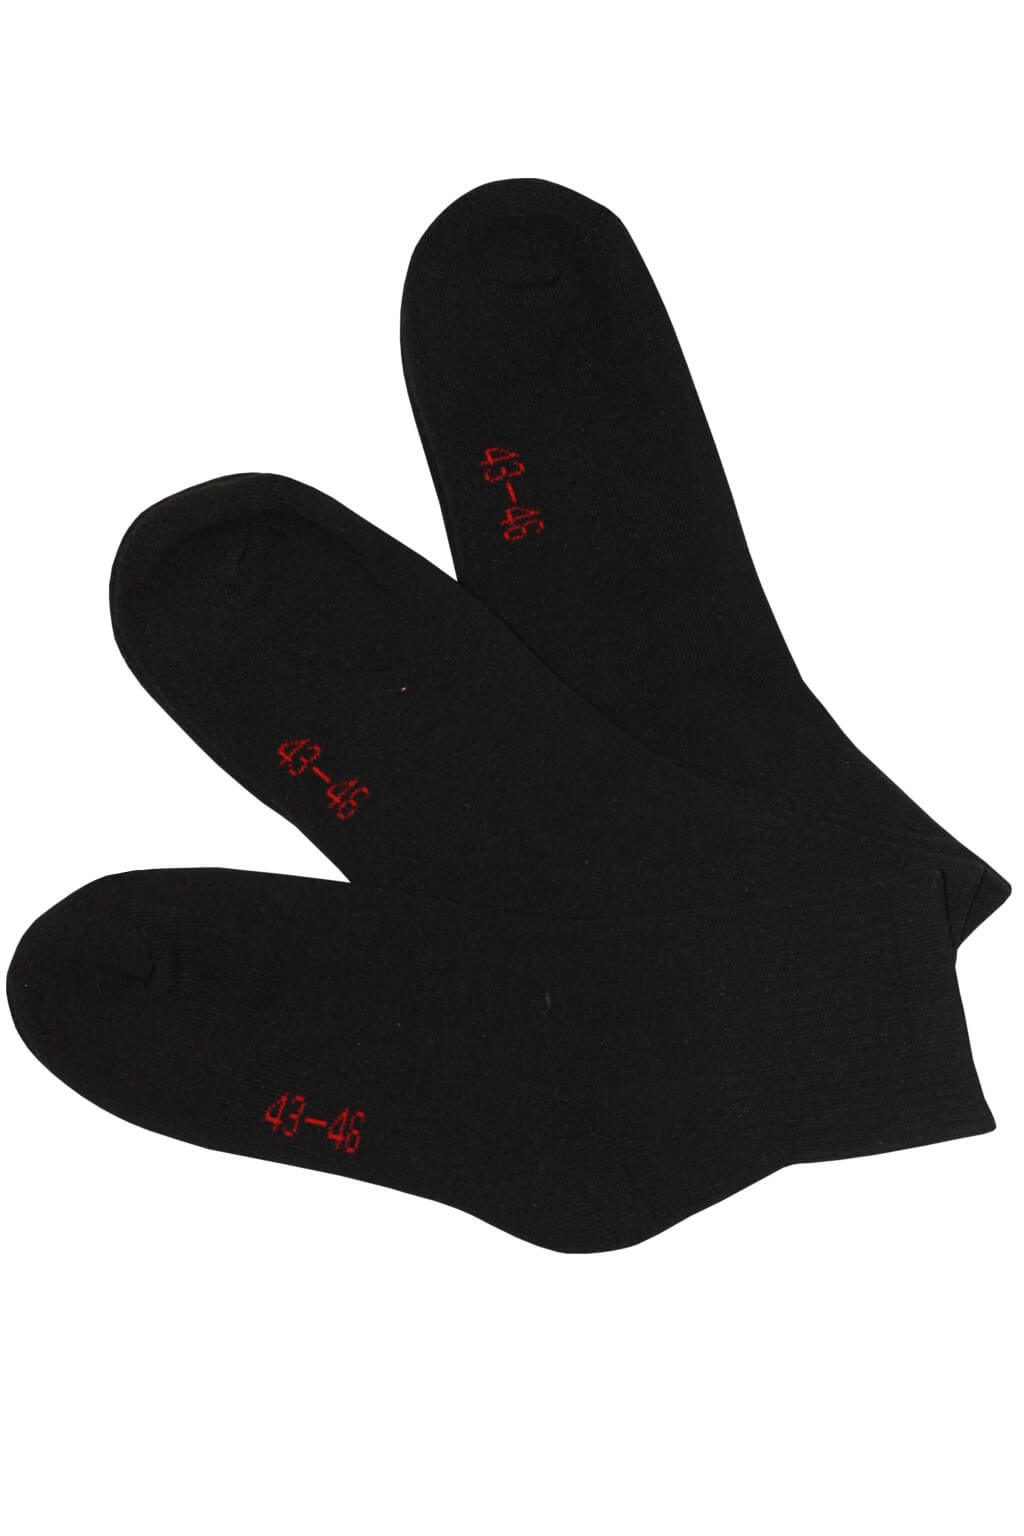 Sport froté ponožky MW3401B - 3páry 43-46 černá